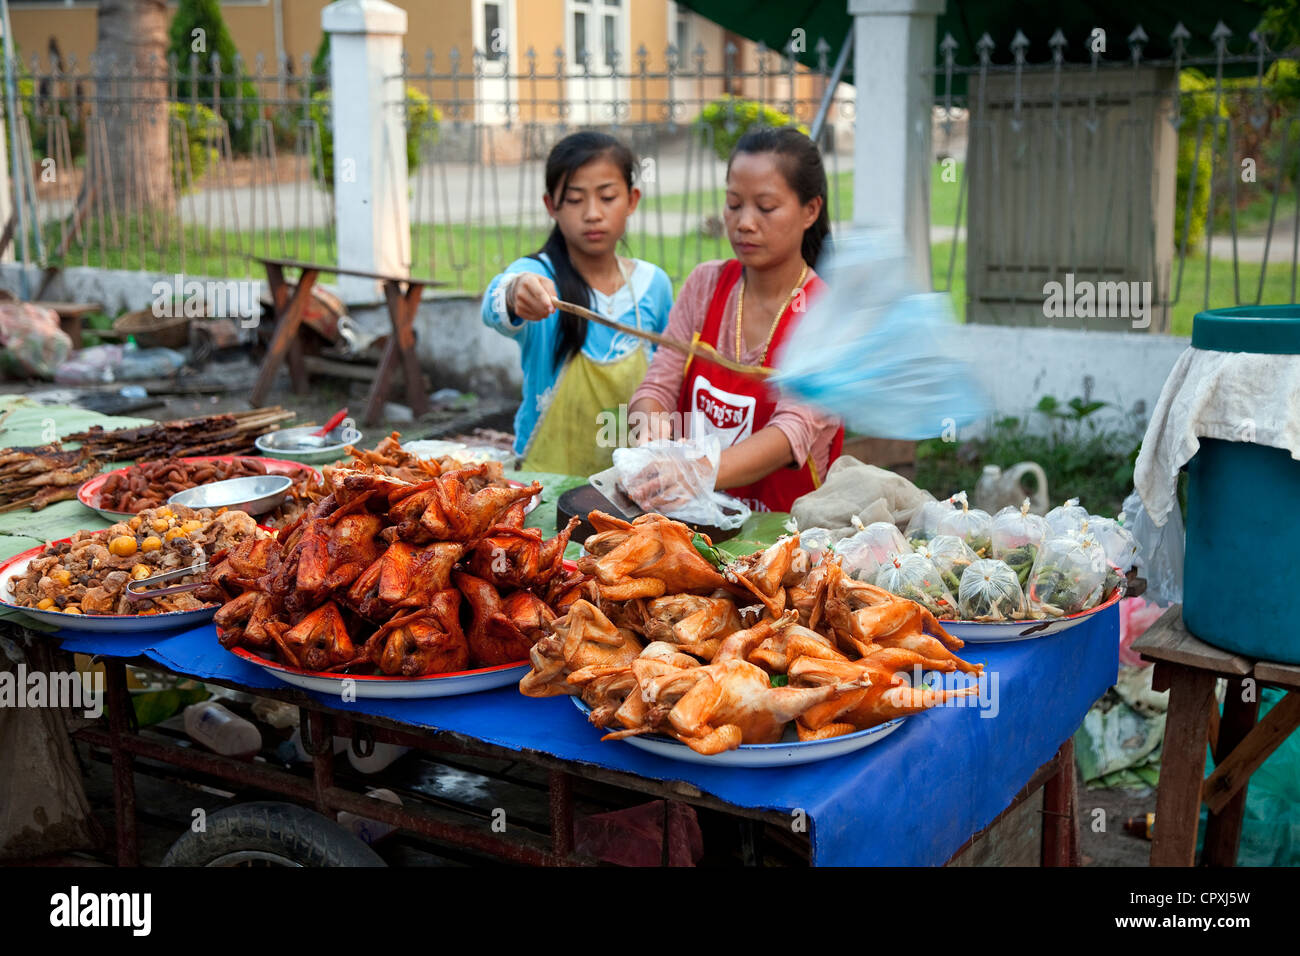 Le Laos, Luang Prabang , à la tombée de la nuit, de l'alimentation stalles offrant du poisson grillé, viande kebab et soupes aromatisées Banque D'Images